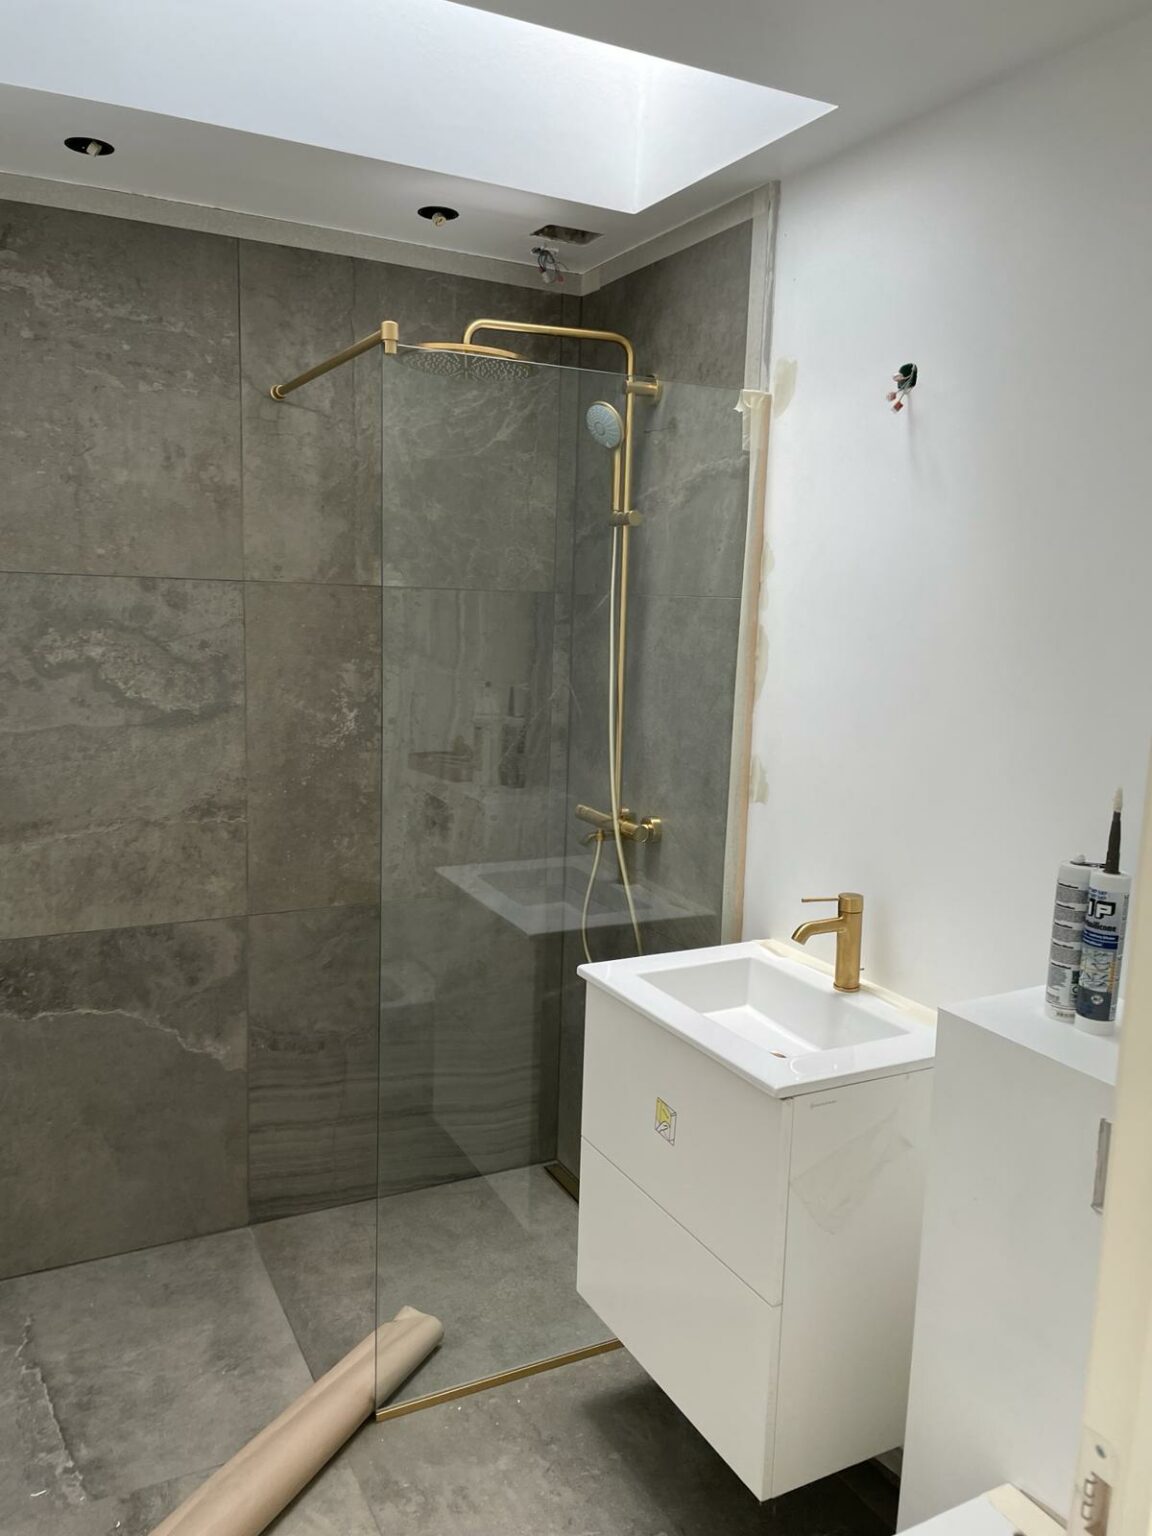 0.7. Udført design interiør af badeværelse  - I proces.